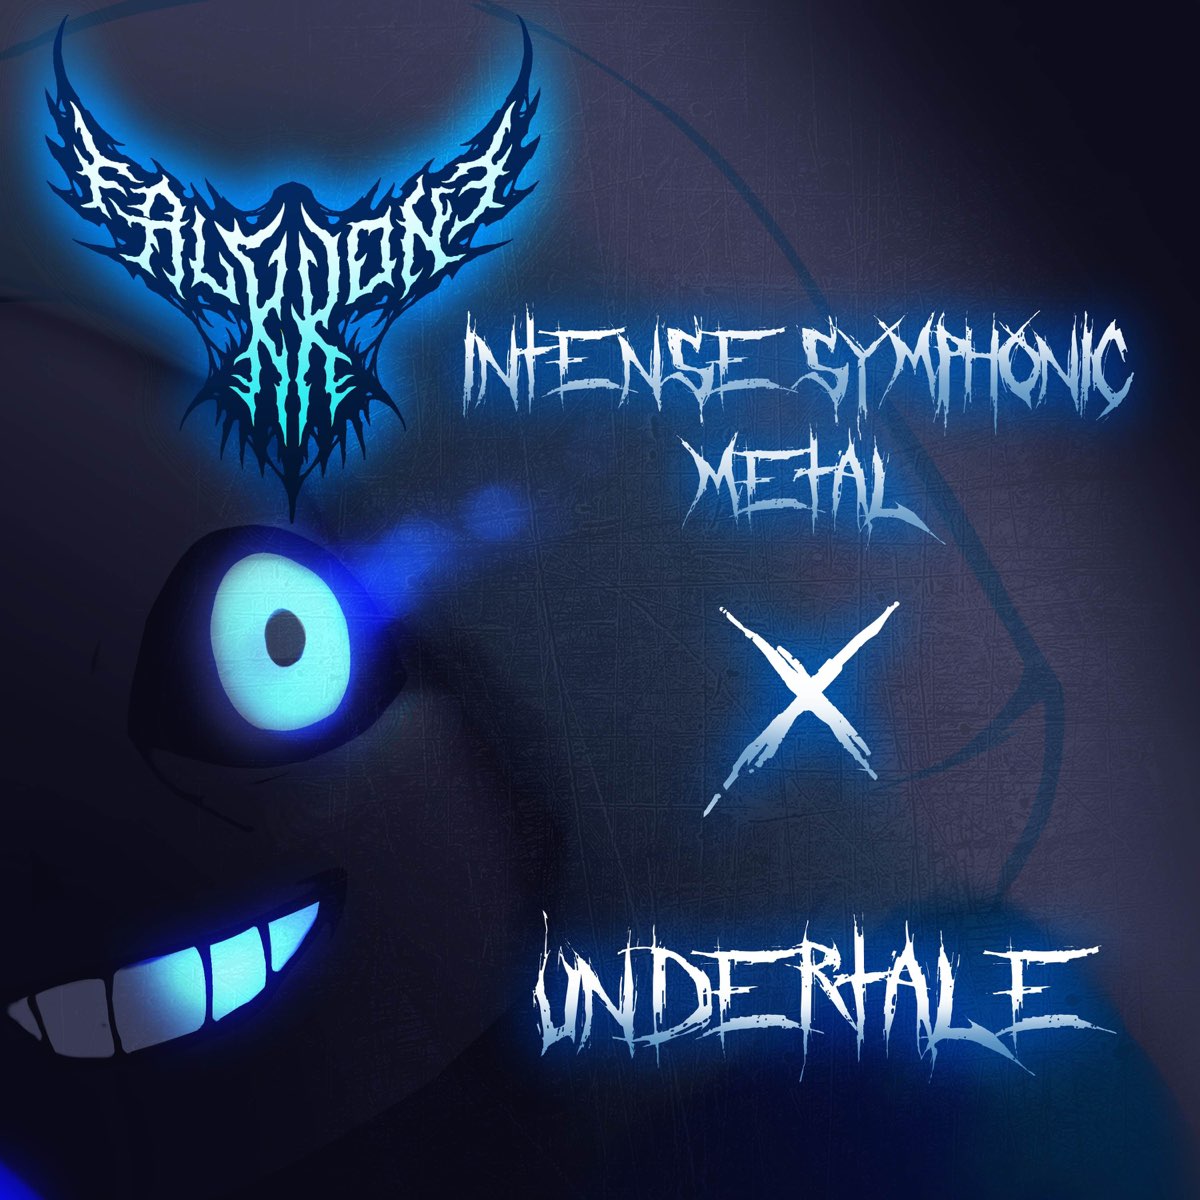 Undertale metal. FALKKONE. FALKKONE - Undertale - Heartache 【intense Symphonic Metal Cover】. Silver for Monster FALKKONE. FLOWHEY from Undertale.